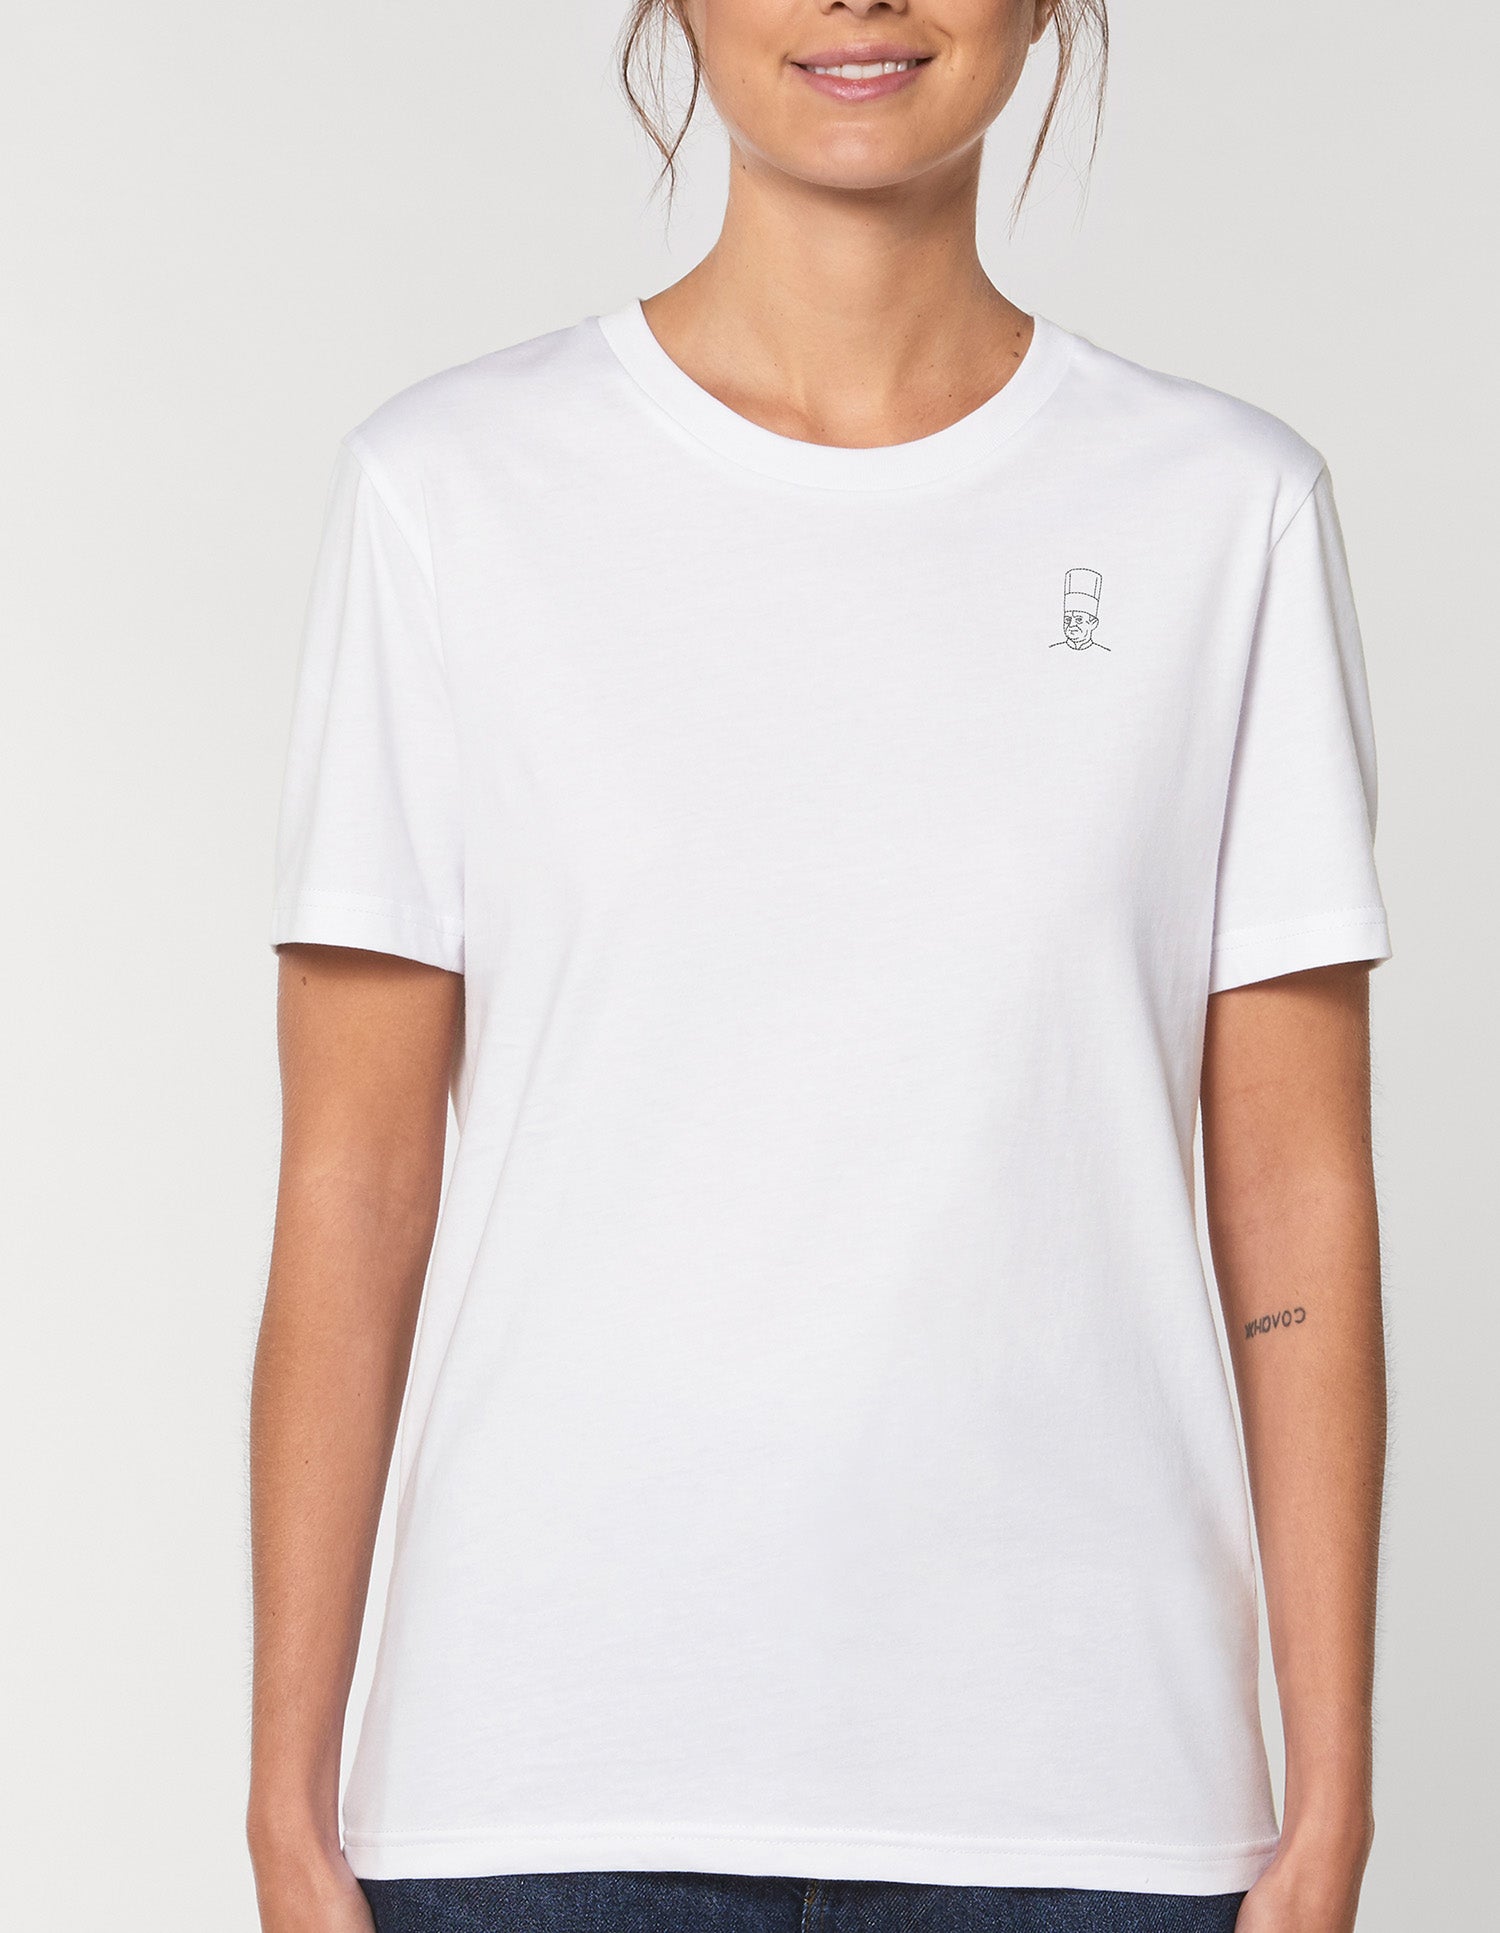 T-shirt blanc brodé Joël Robuchon